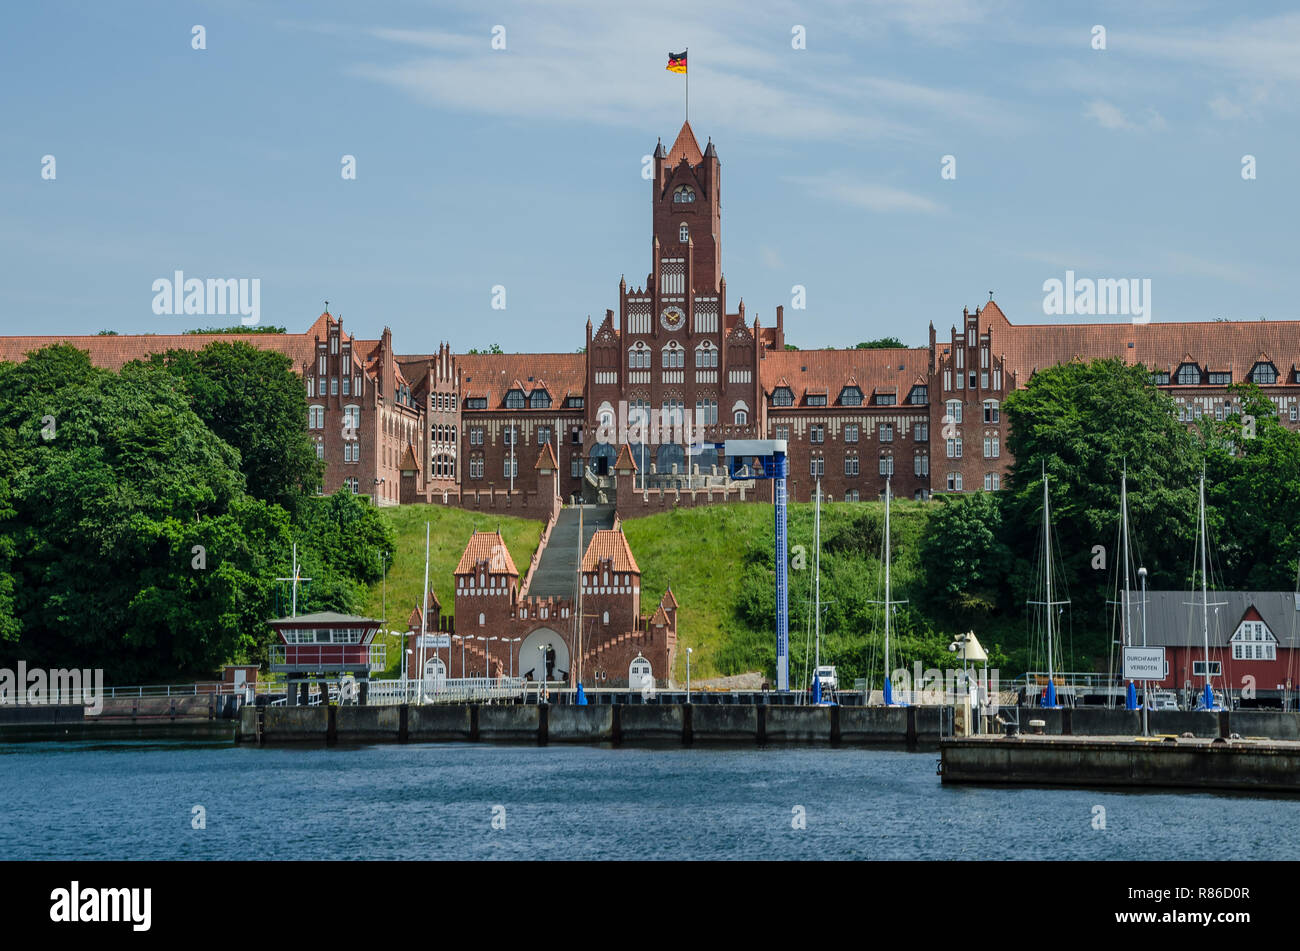 Die Flotte Befehl in Glücksburg, die Marineschule in der Telekommunikation und der Naval College alle haben enge Verbindungen zu Flensburg. Stockfoto